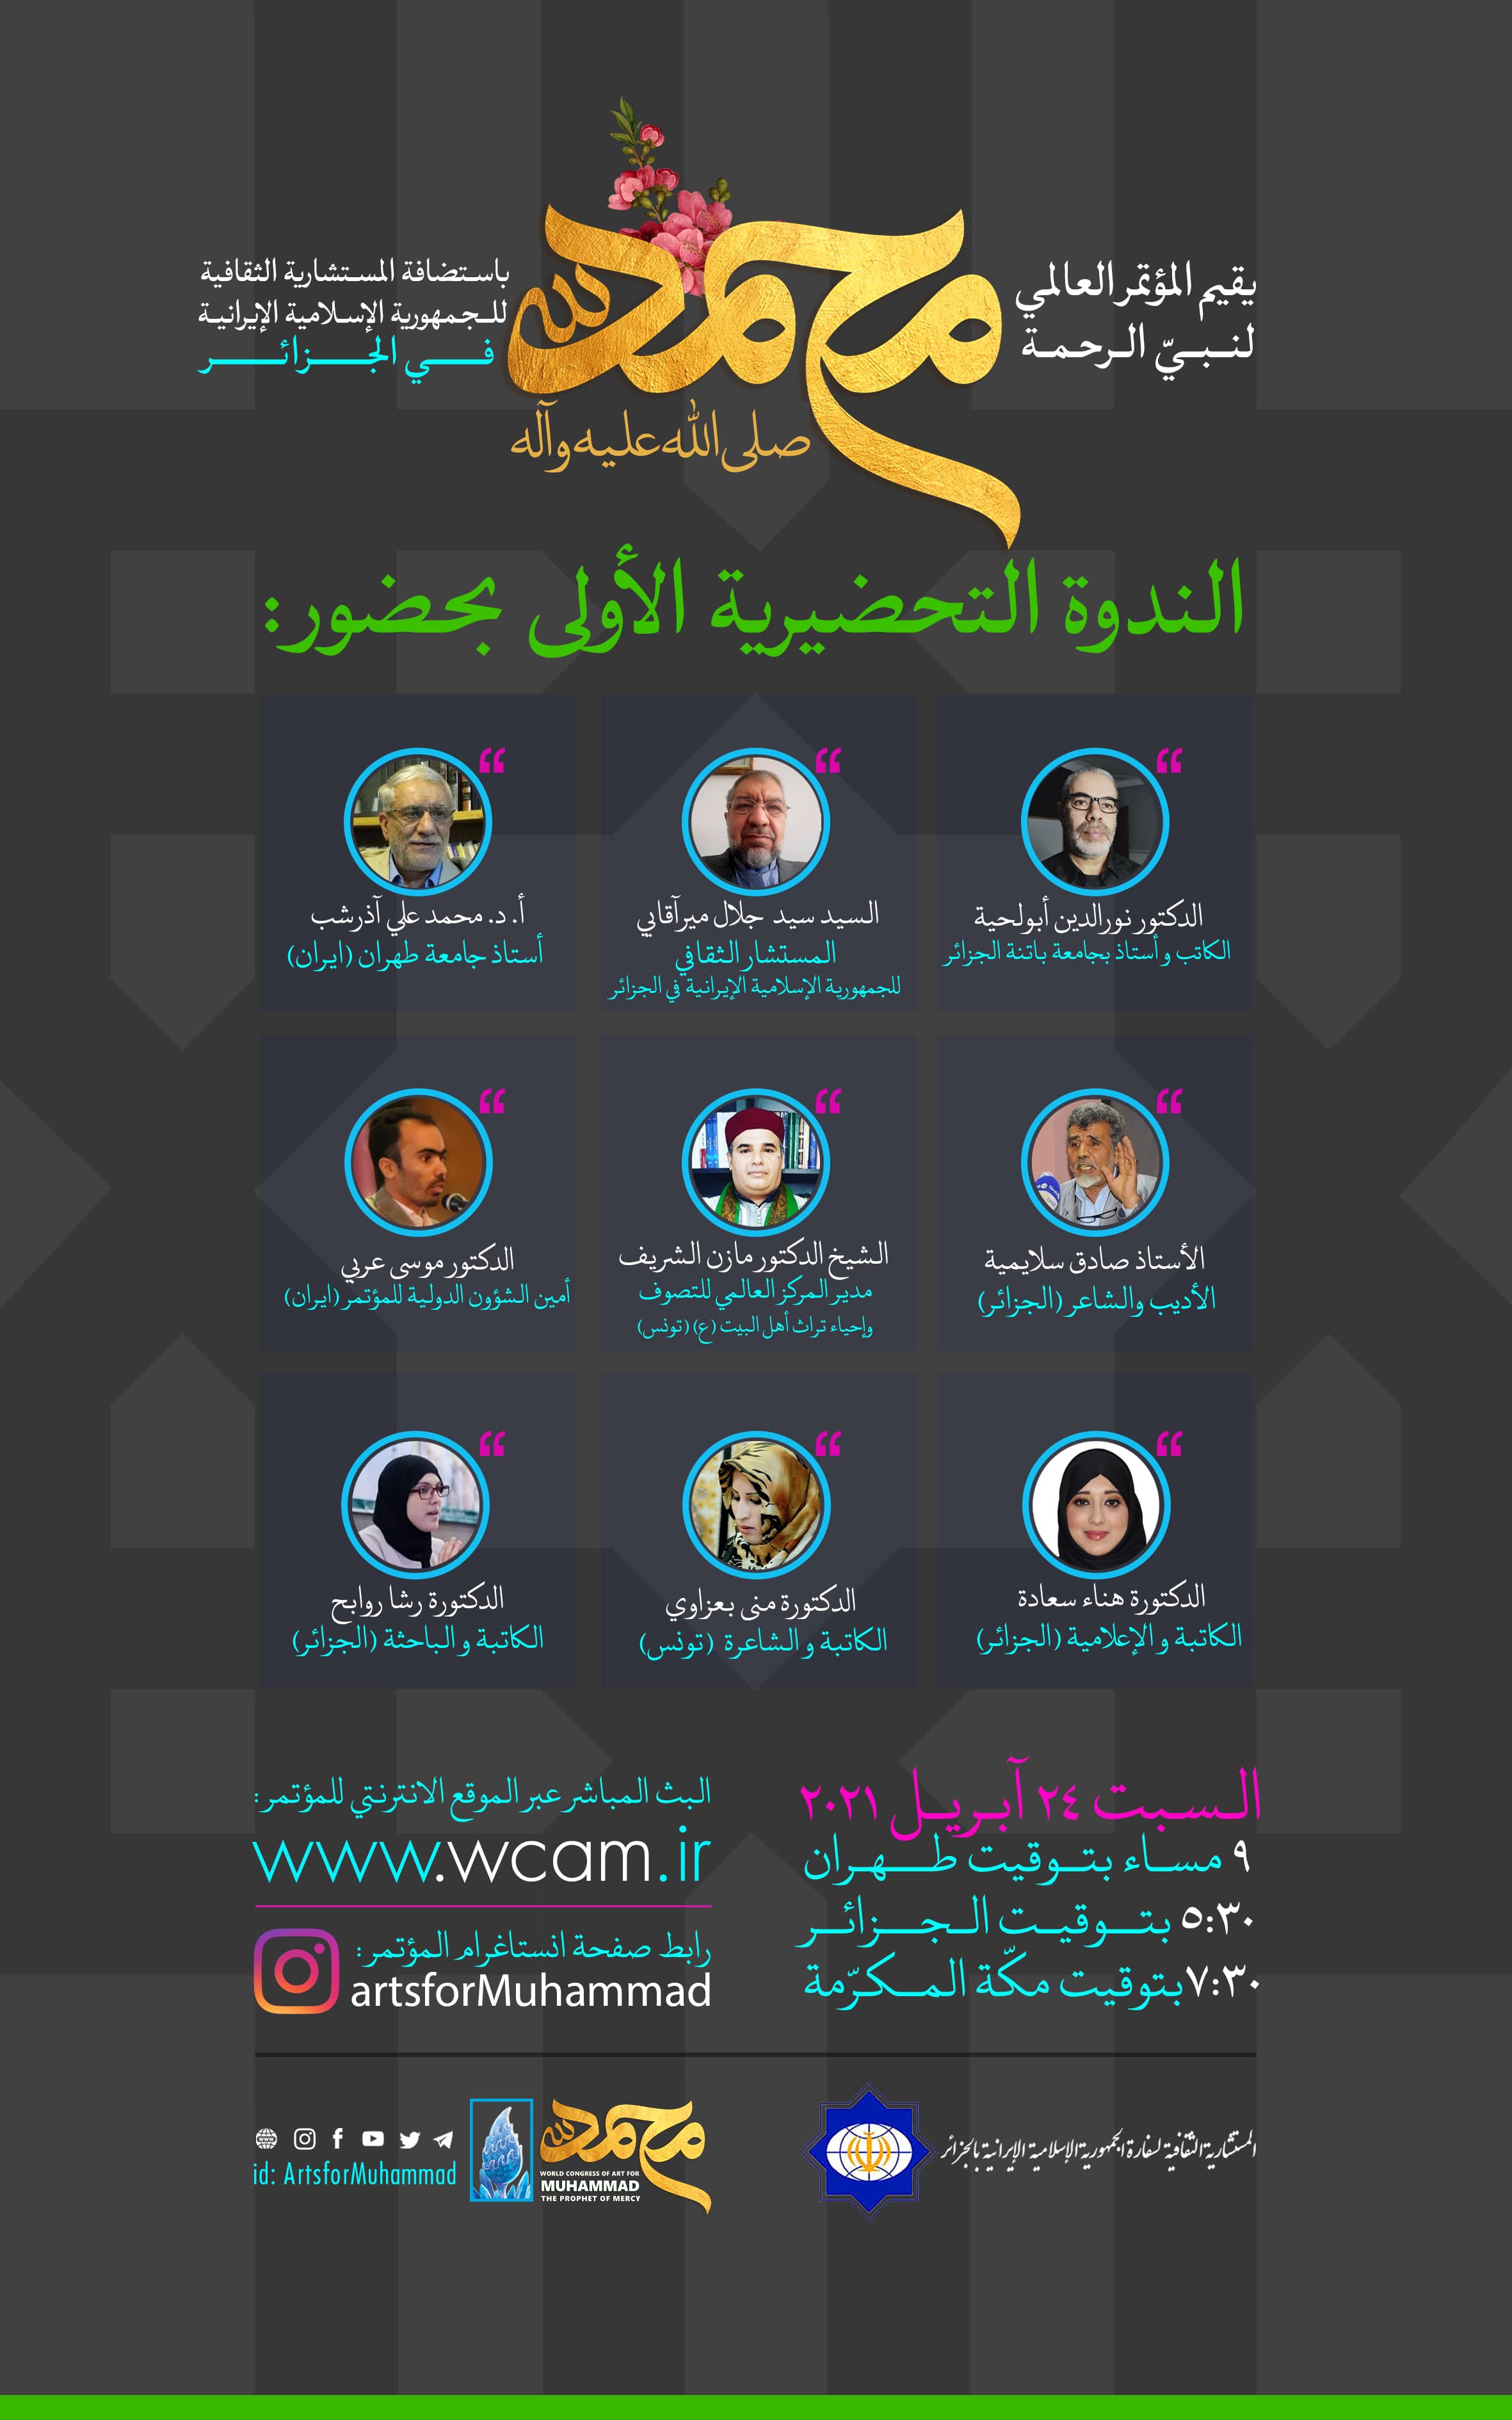 نشست شماره 1: آیین رونمایی و افتتاحیه کنگره در کشور الجزایر با حضور شاعران و اندیشمندانی از ایران، الجزایر و تونس